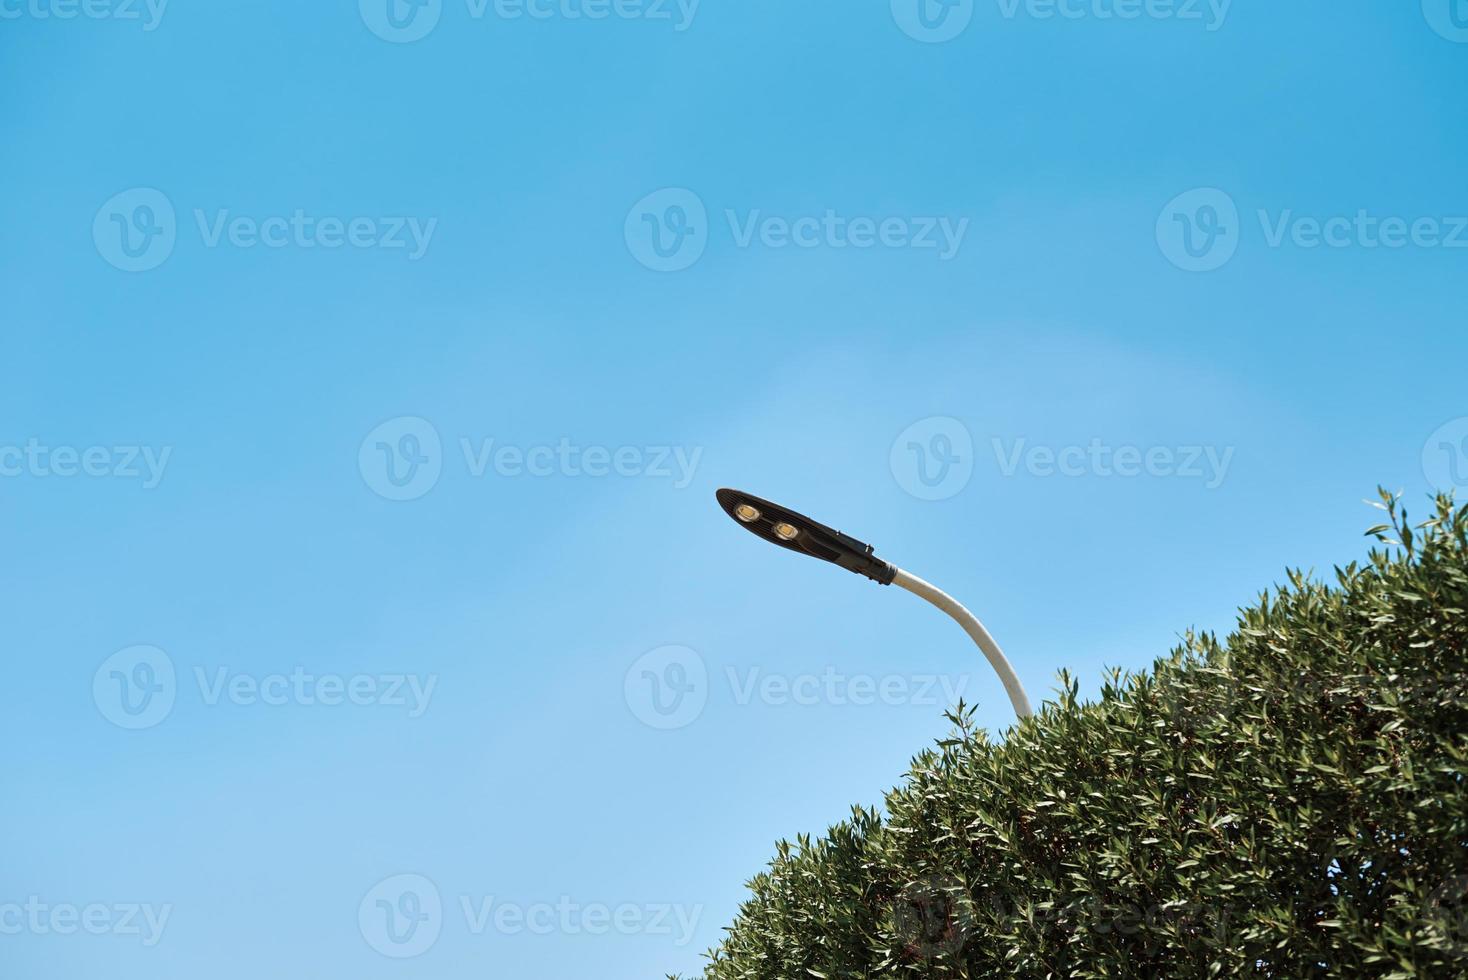 energi sparande led lampa i gata lampa mot blå himmel, närbild foto